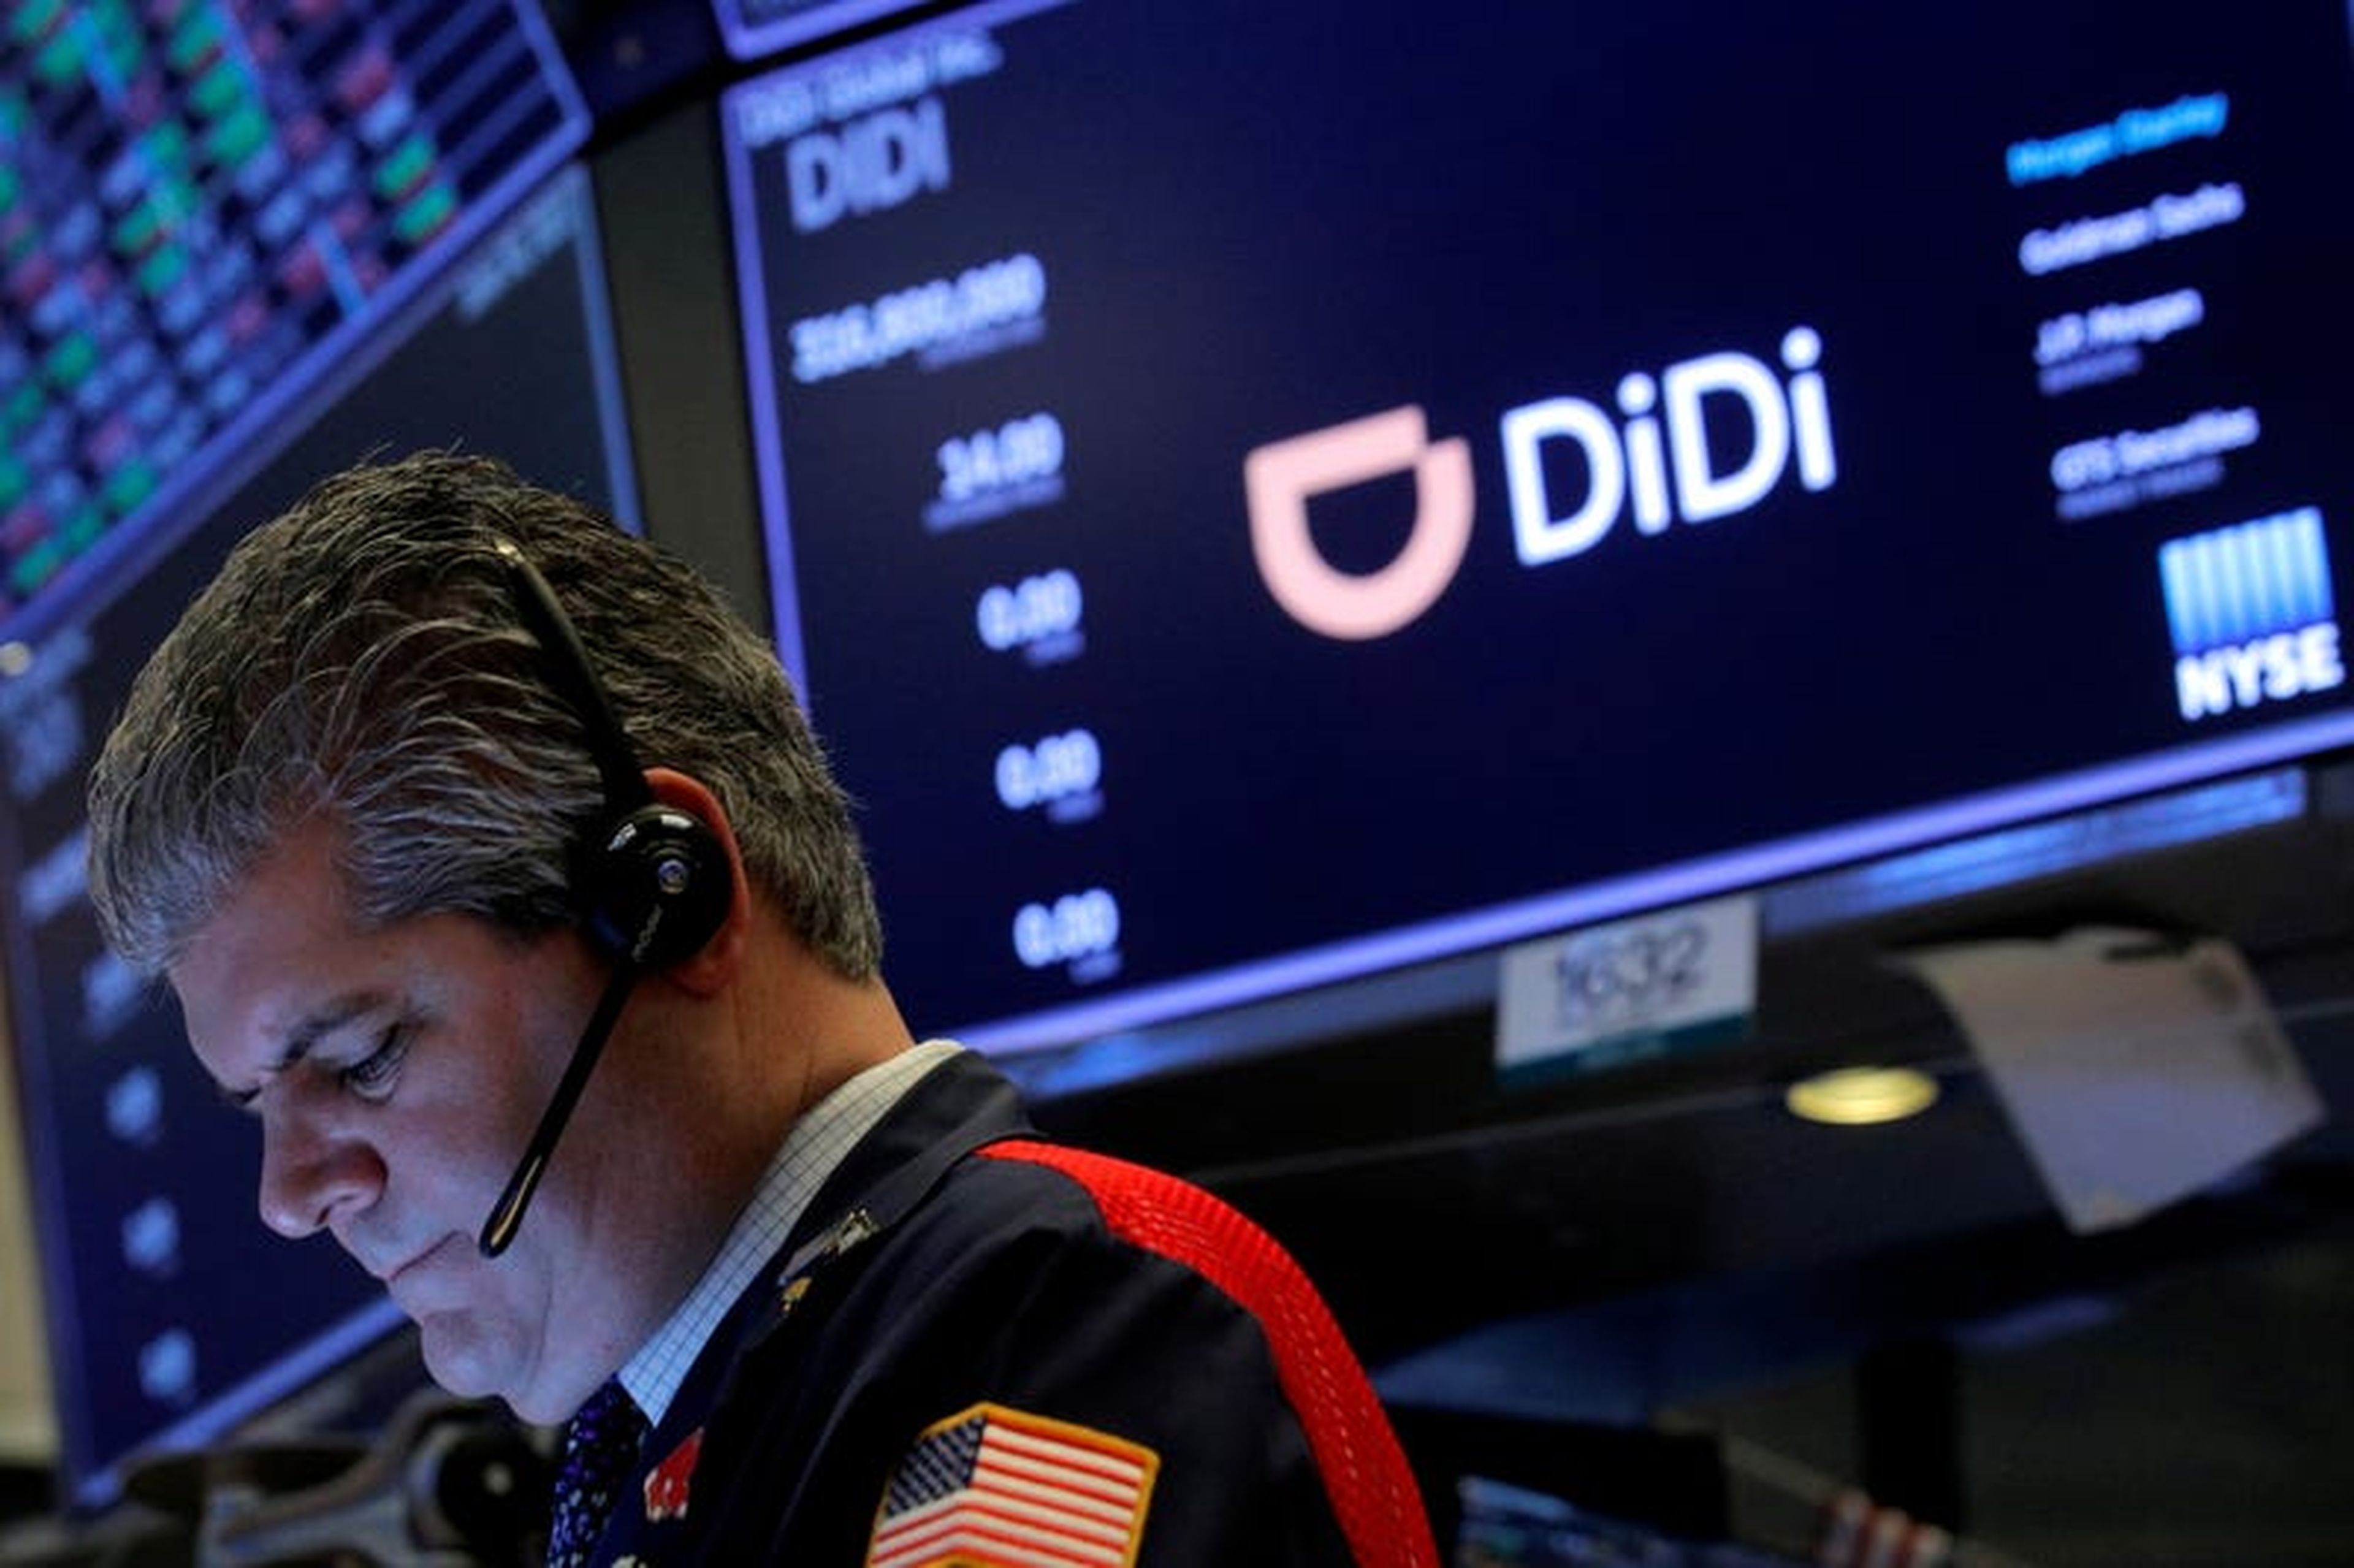 La aplicación china de transporte compartido Didi Global recaudó más de 3.700 millones de euros en su debut en Wall Street. 2 días después, colapsó bajo el escrutinio regulatorio.